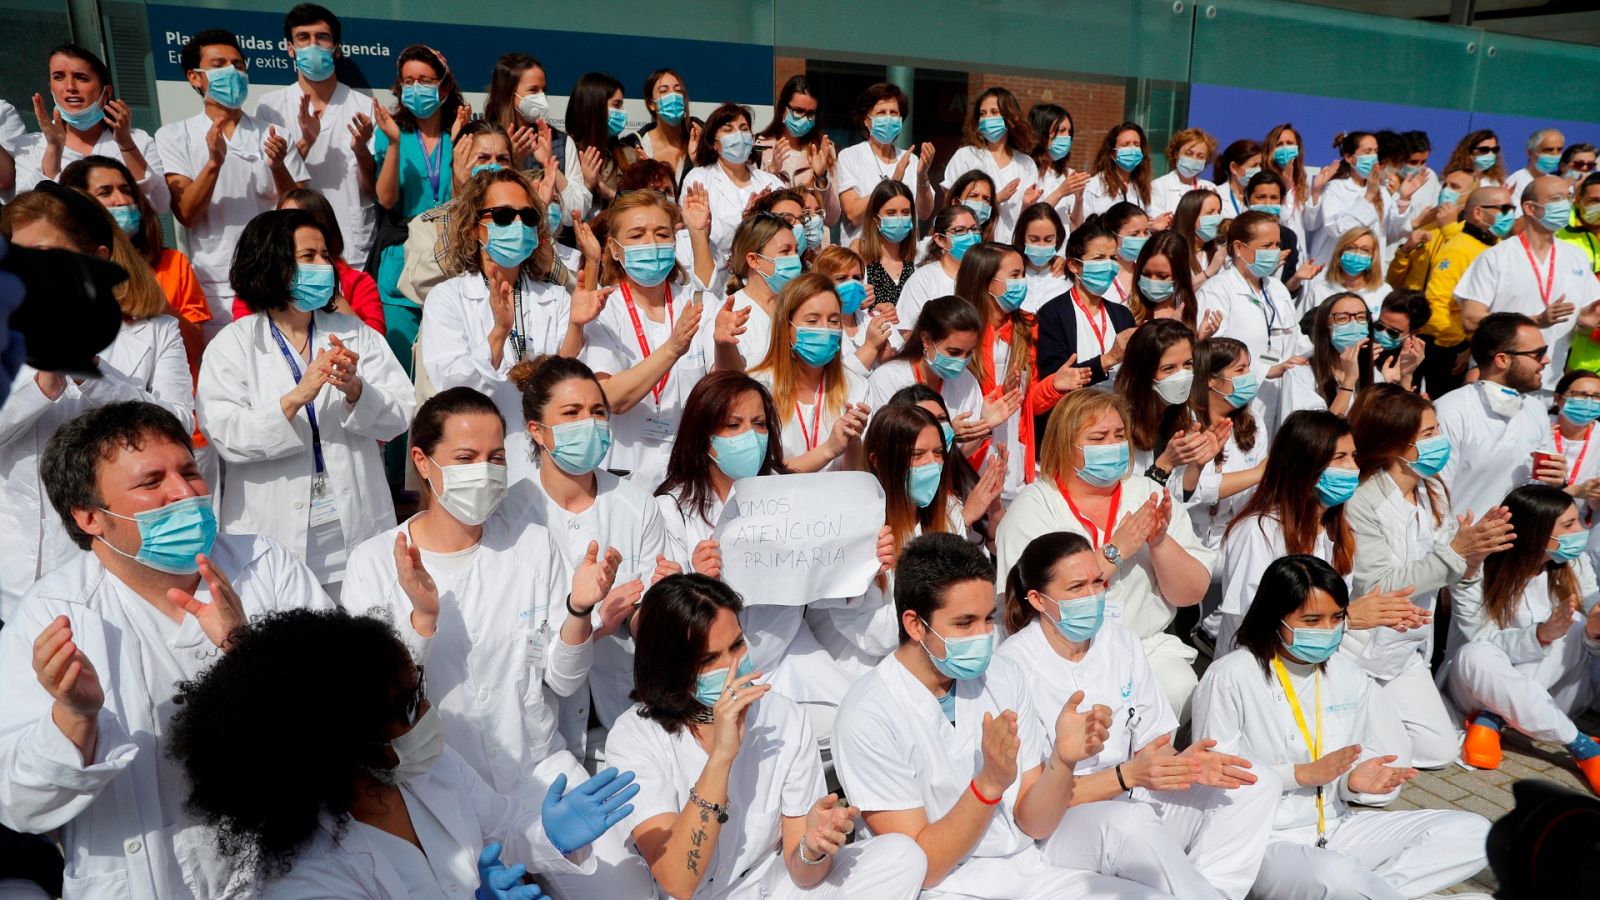 IFEMA cierra sus puertas al grito de "queremos test" de los sanitarios